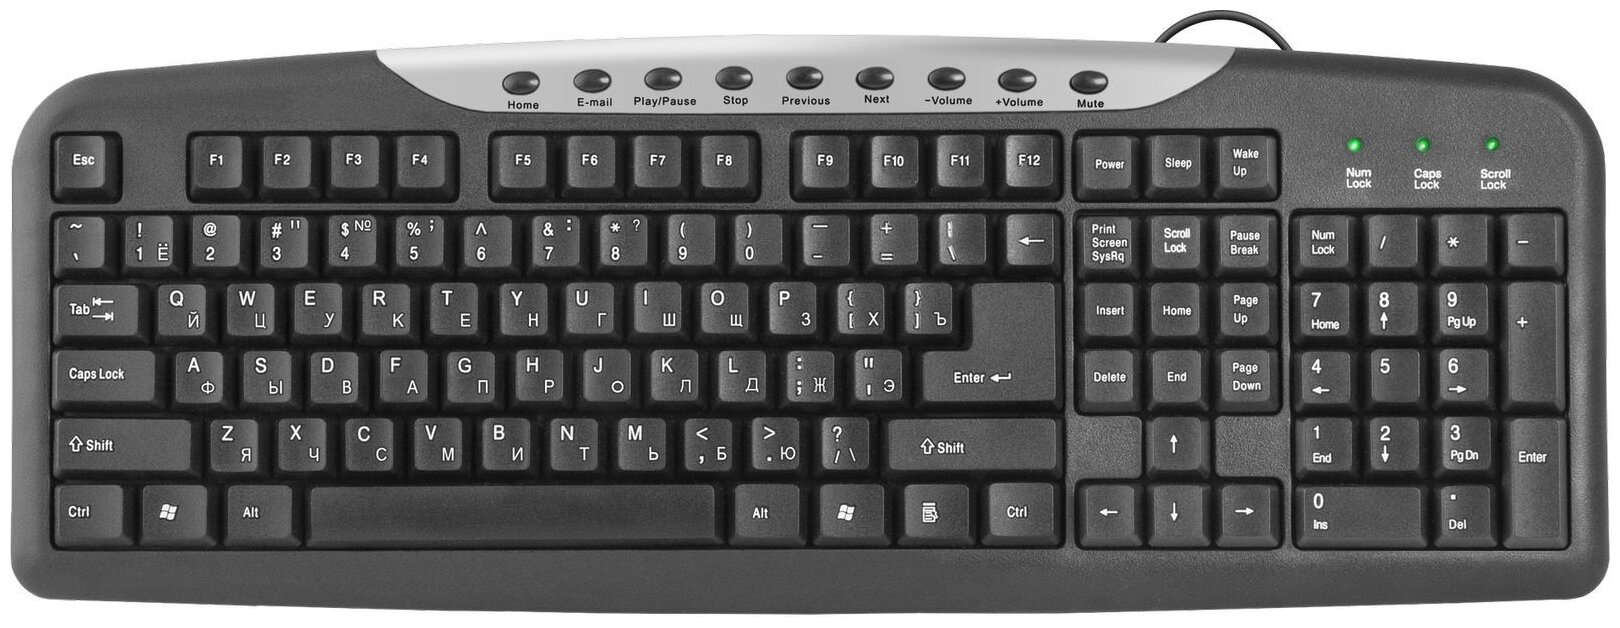 Клавиатура Defender HM-830 стандартная, чёрная